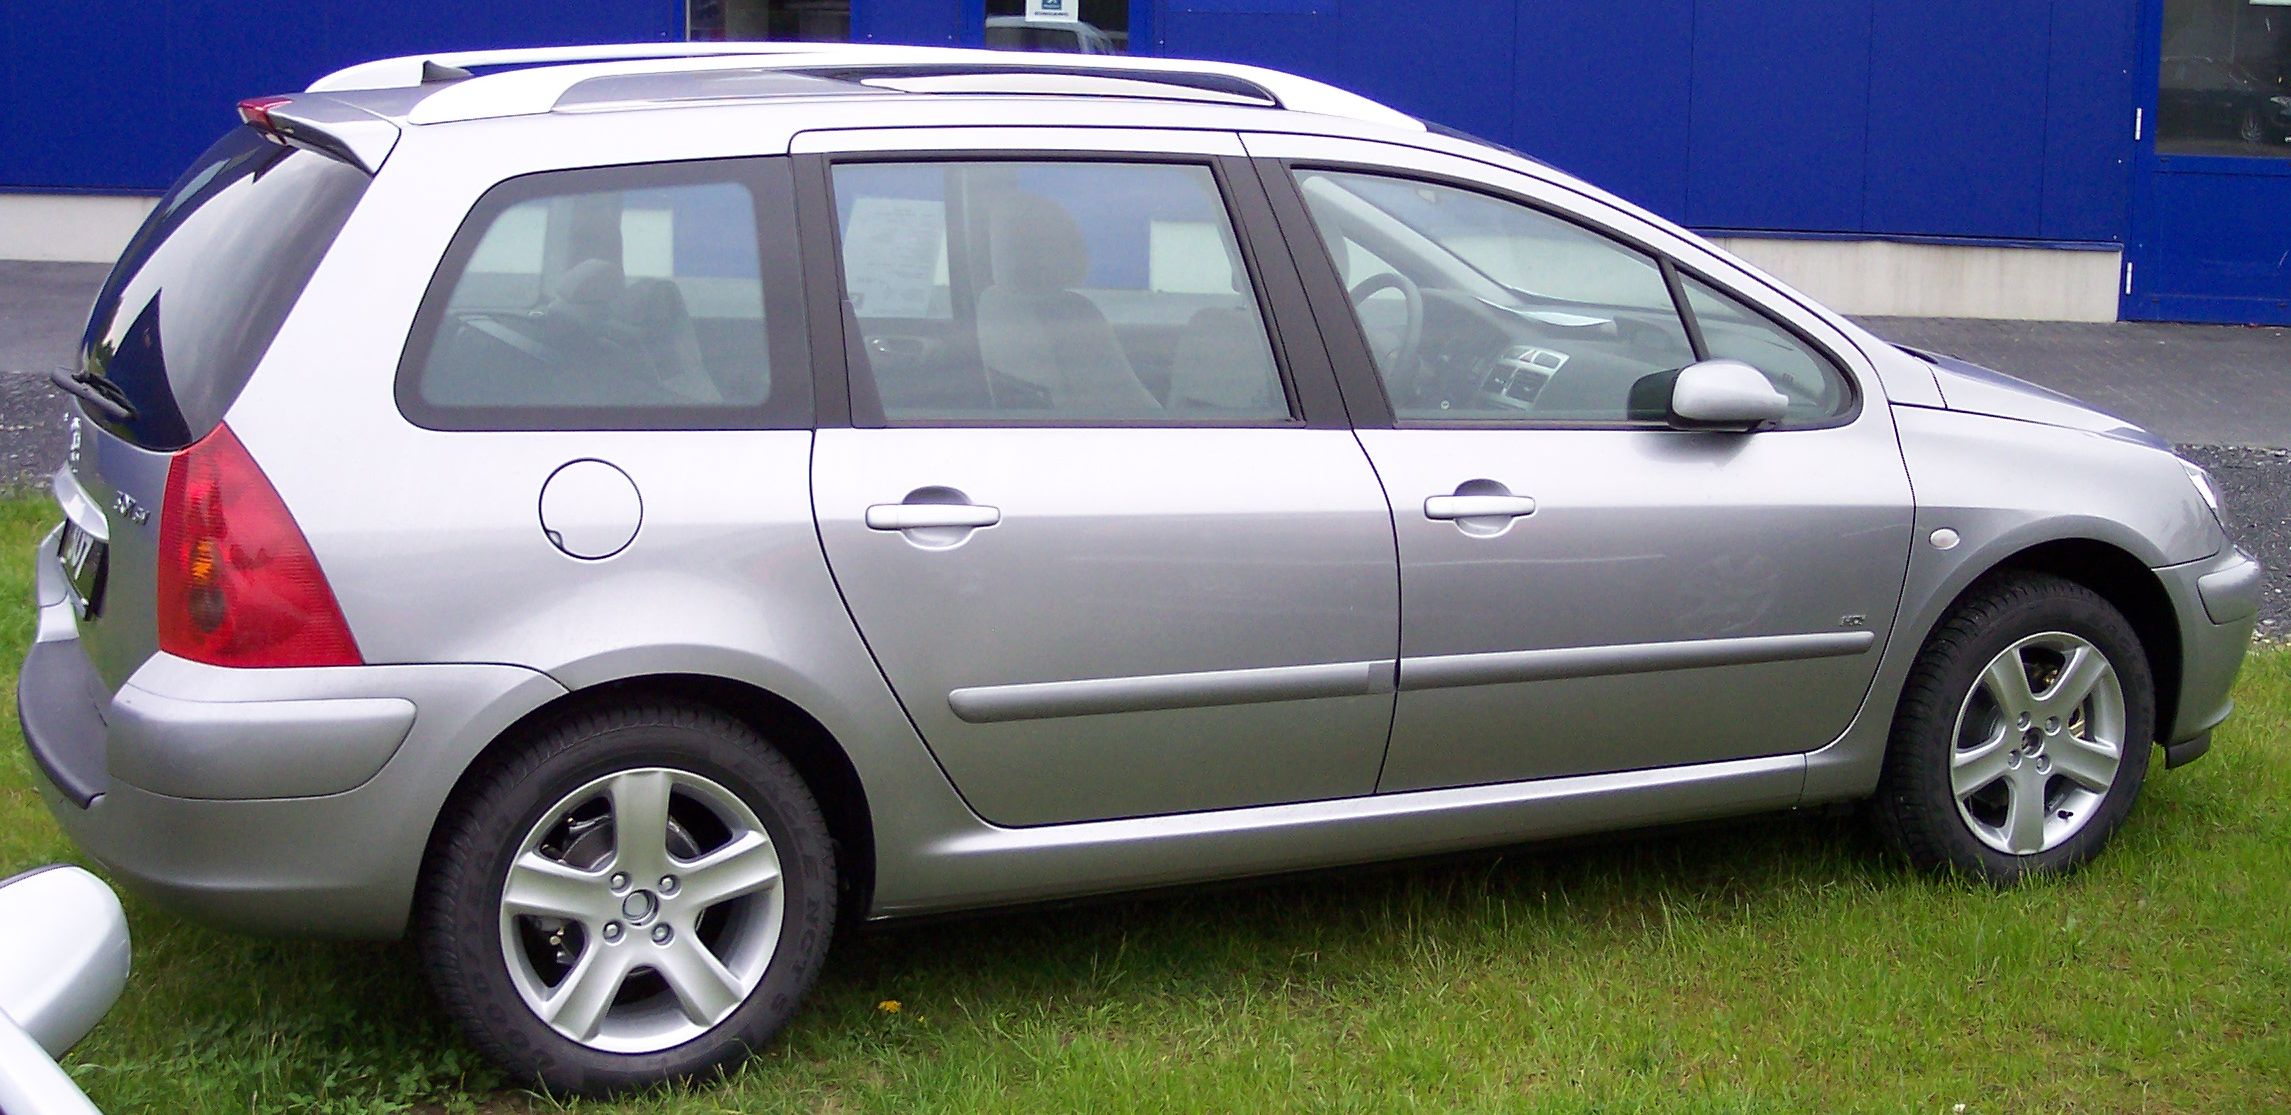 File:Peugeot 307 rear 20071217.jpg - Wikimedia Commons